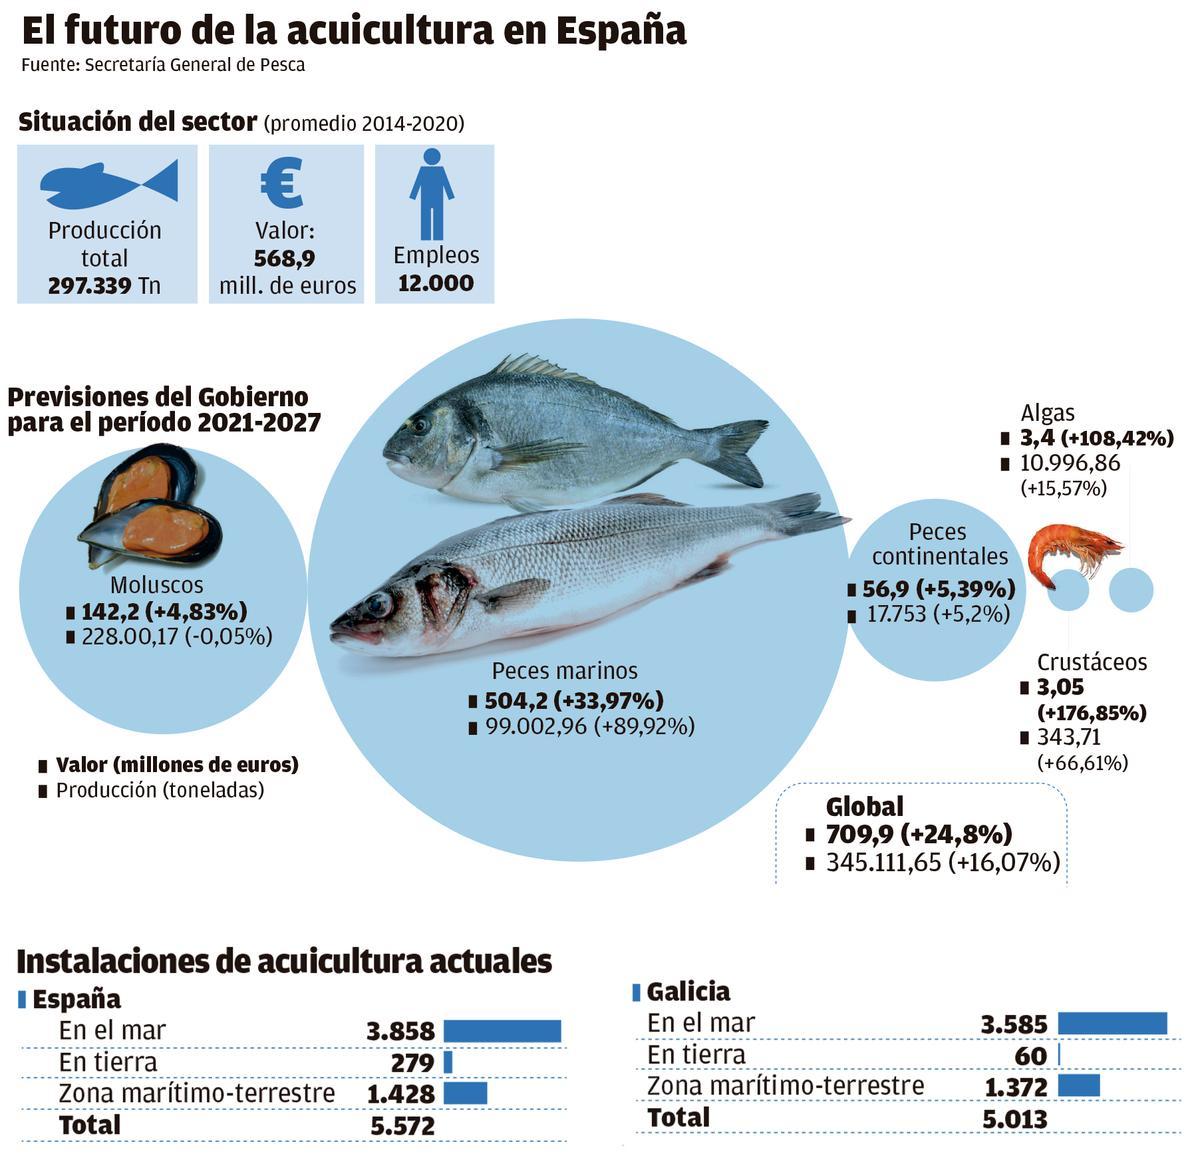 El futuro de la acuicultura en España